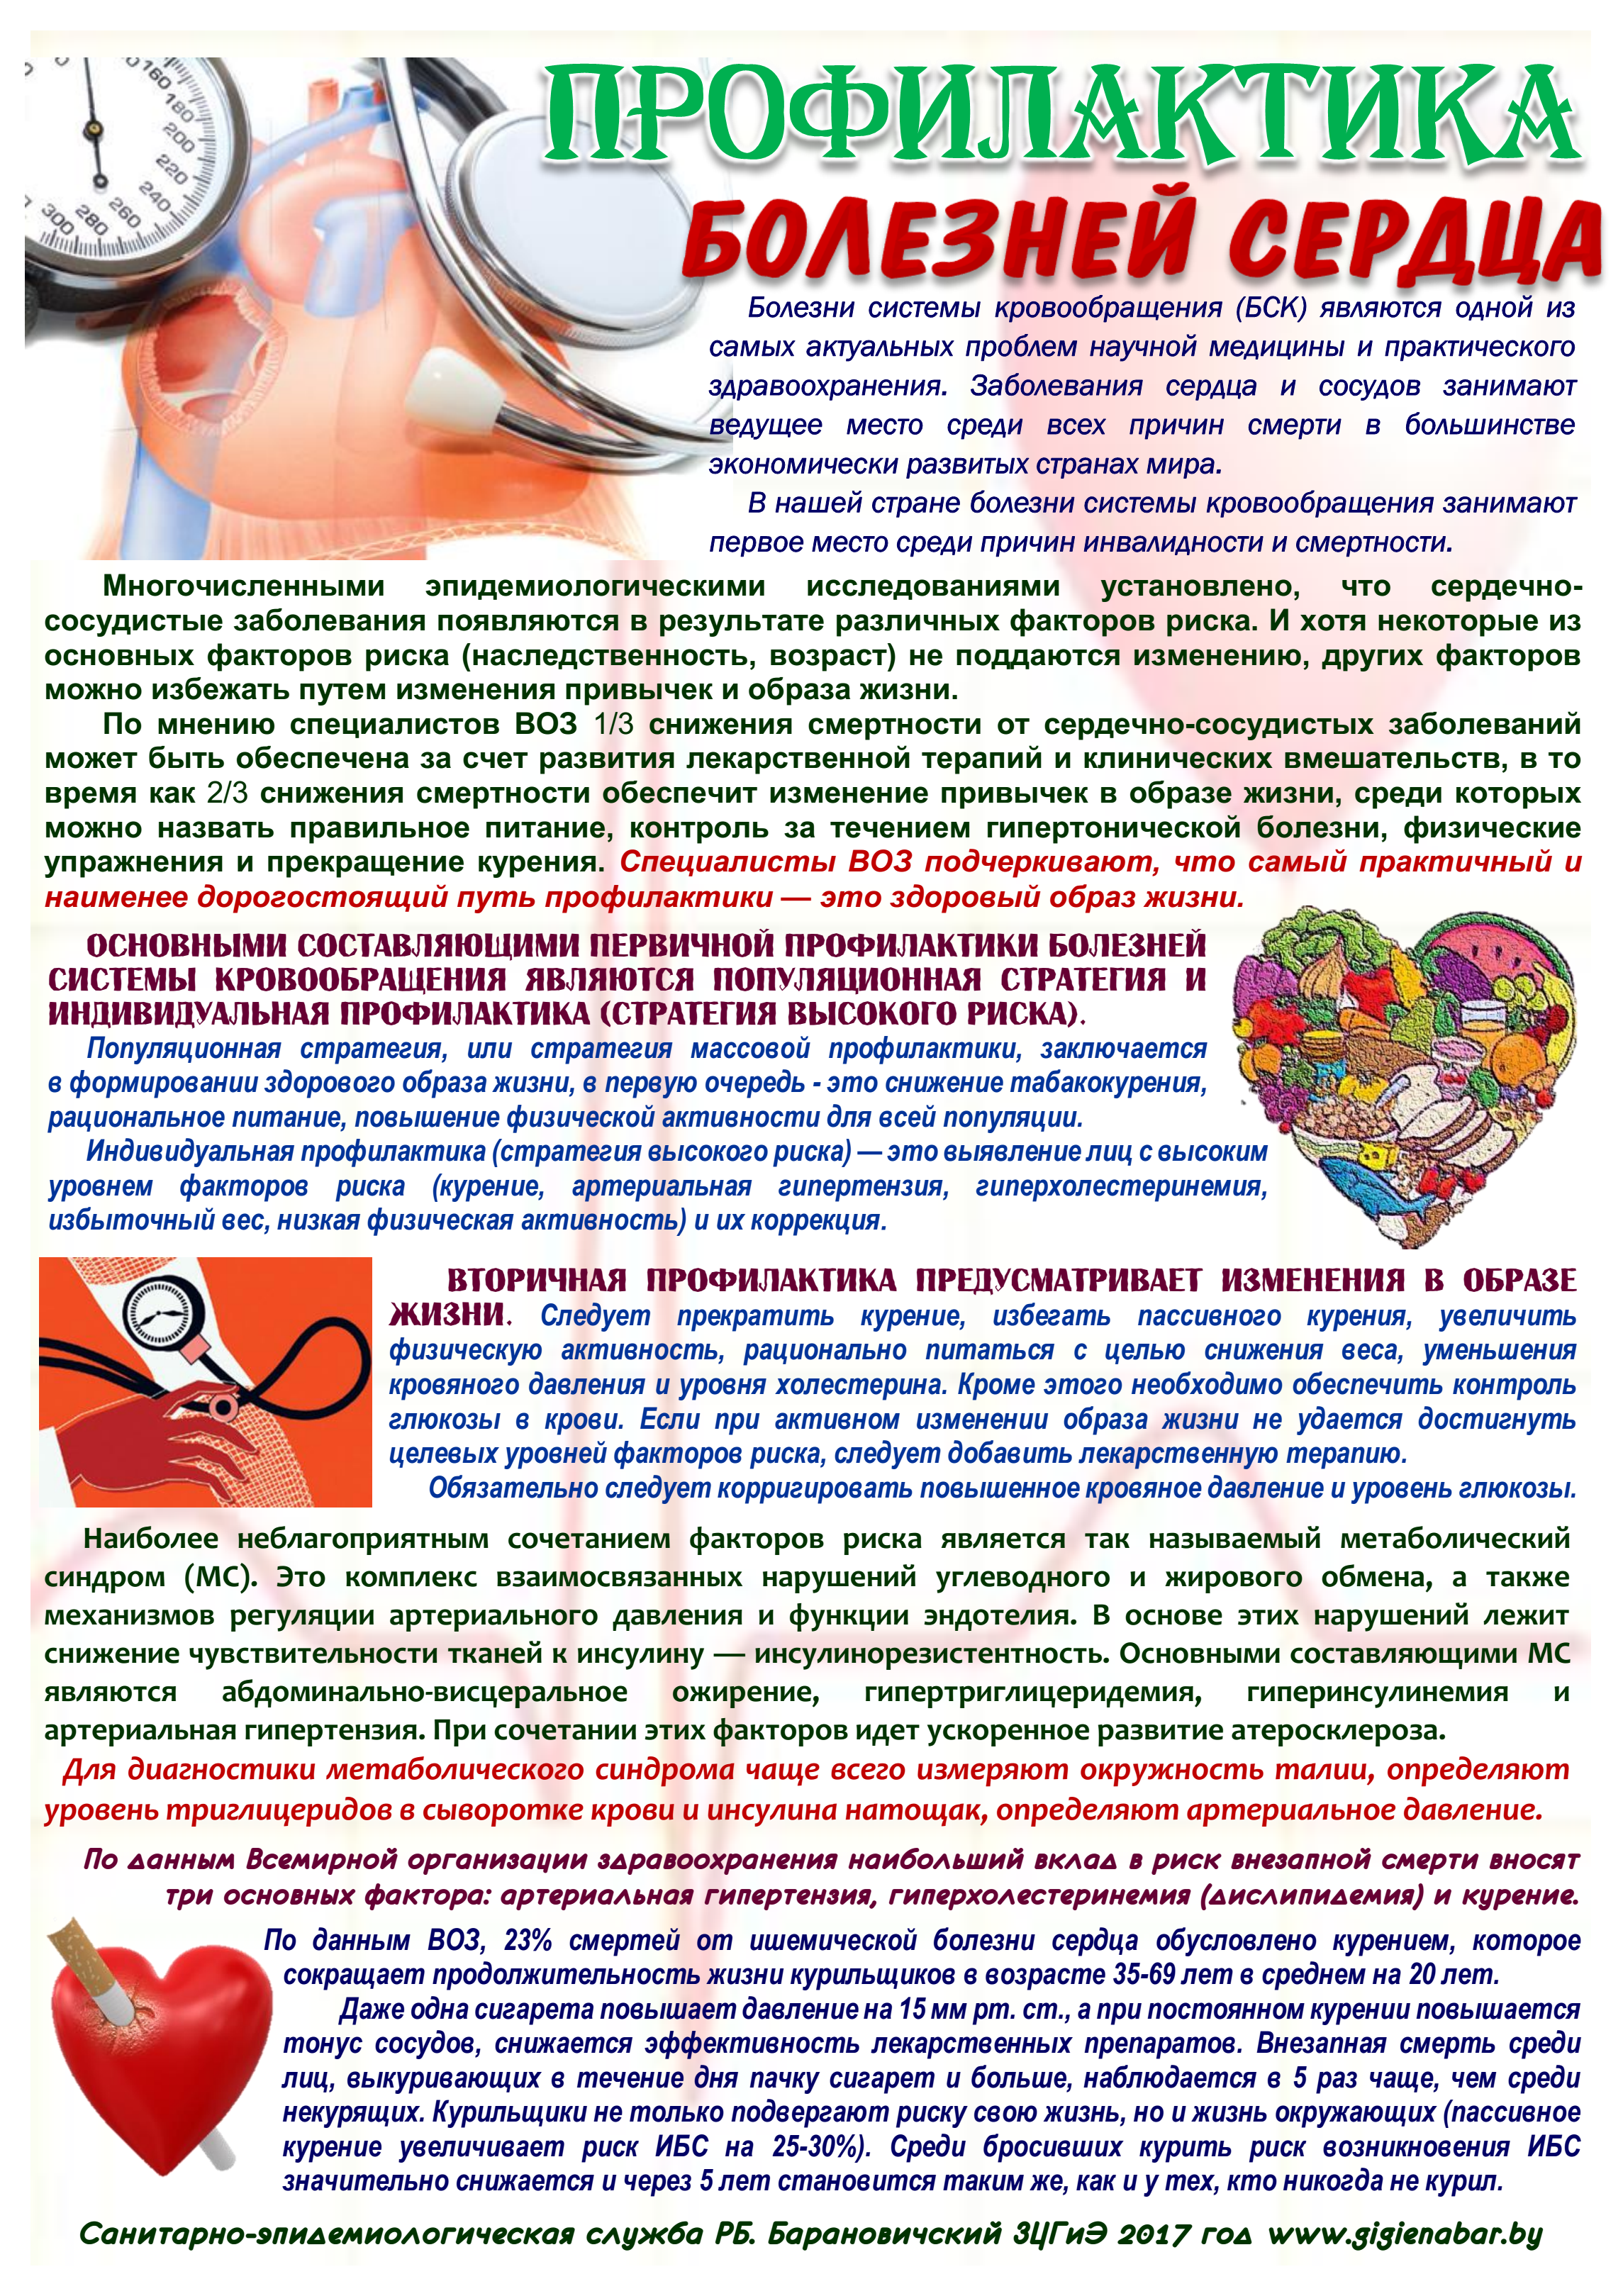 Сердечно-сосудистая система ребенка и ее укрепление. дипломная (вкр). медицина, физкультура, здравоохранение. 2011-09-10